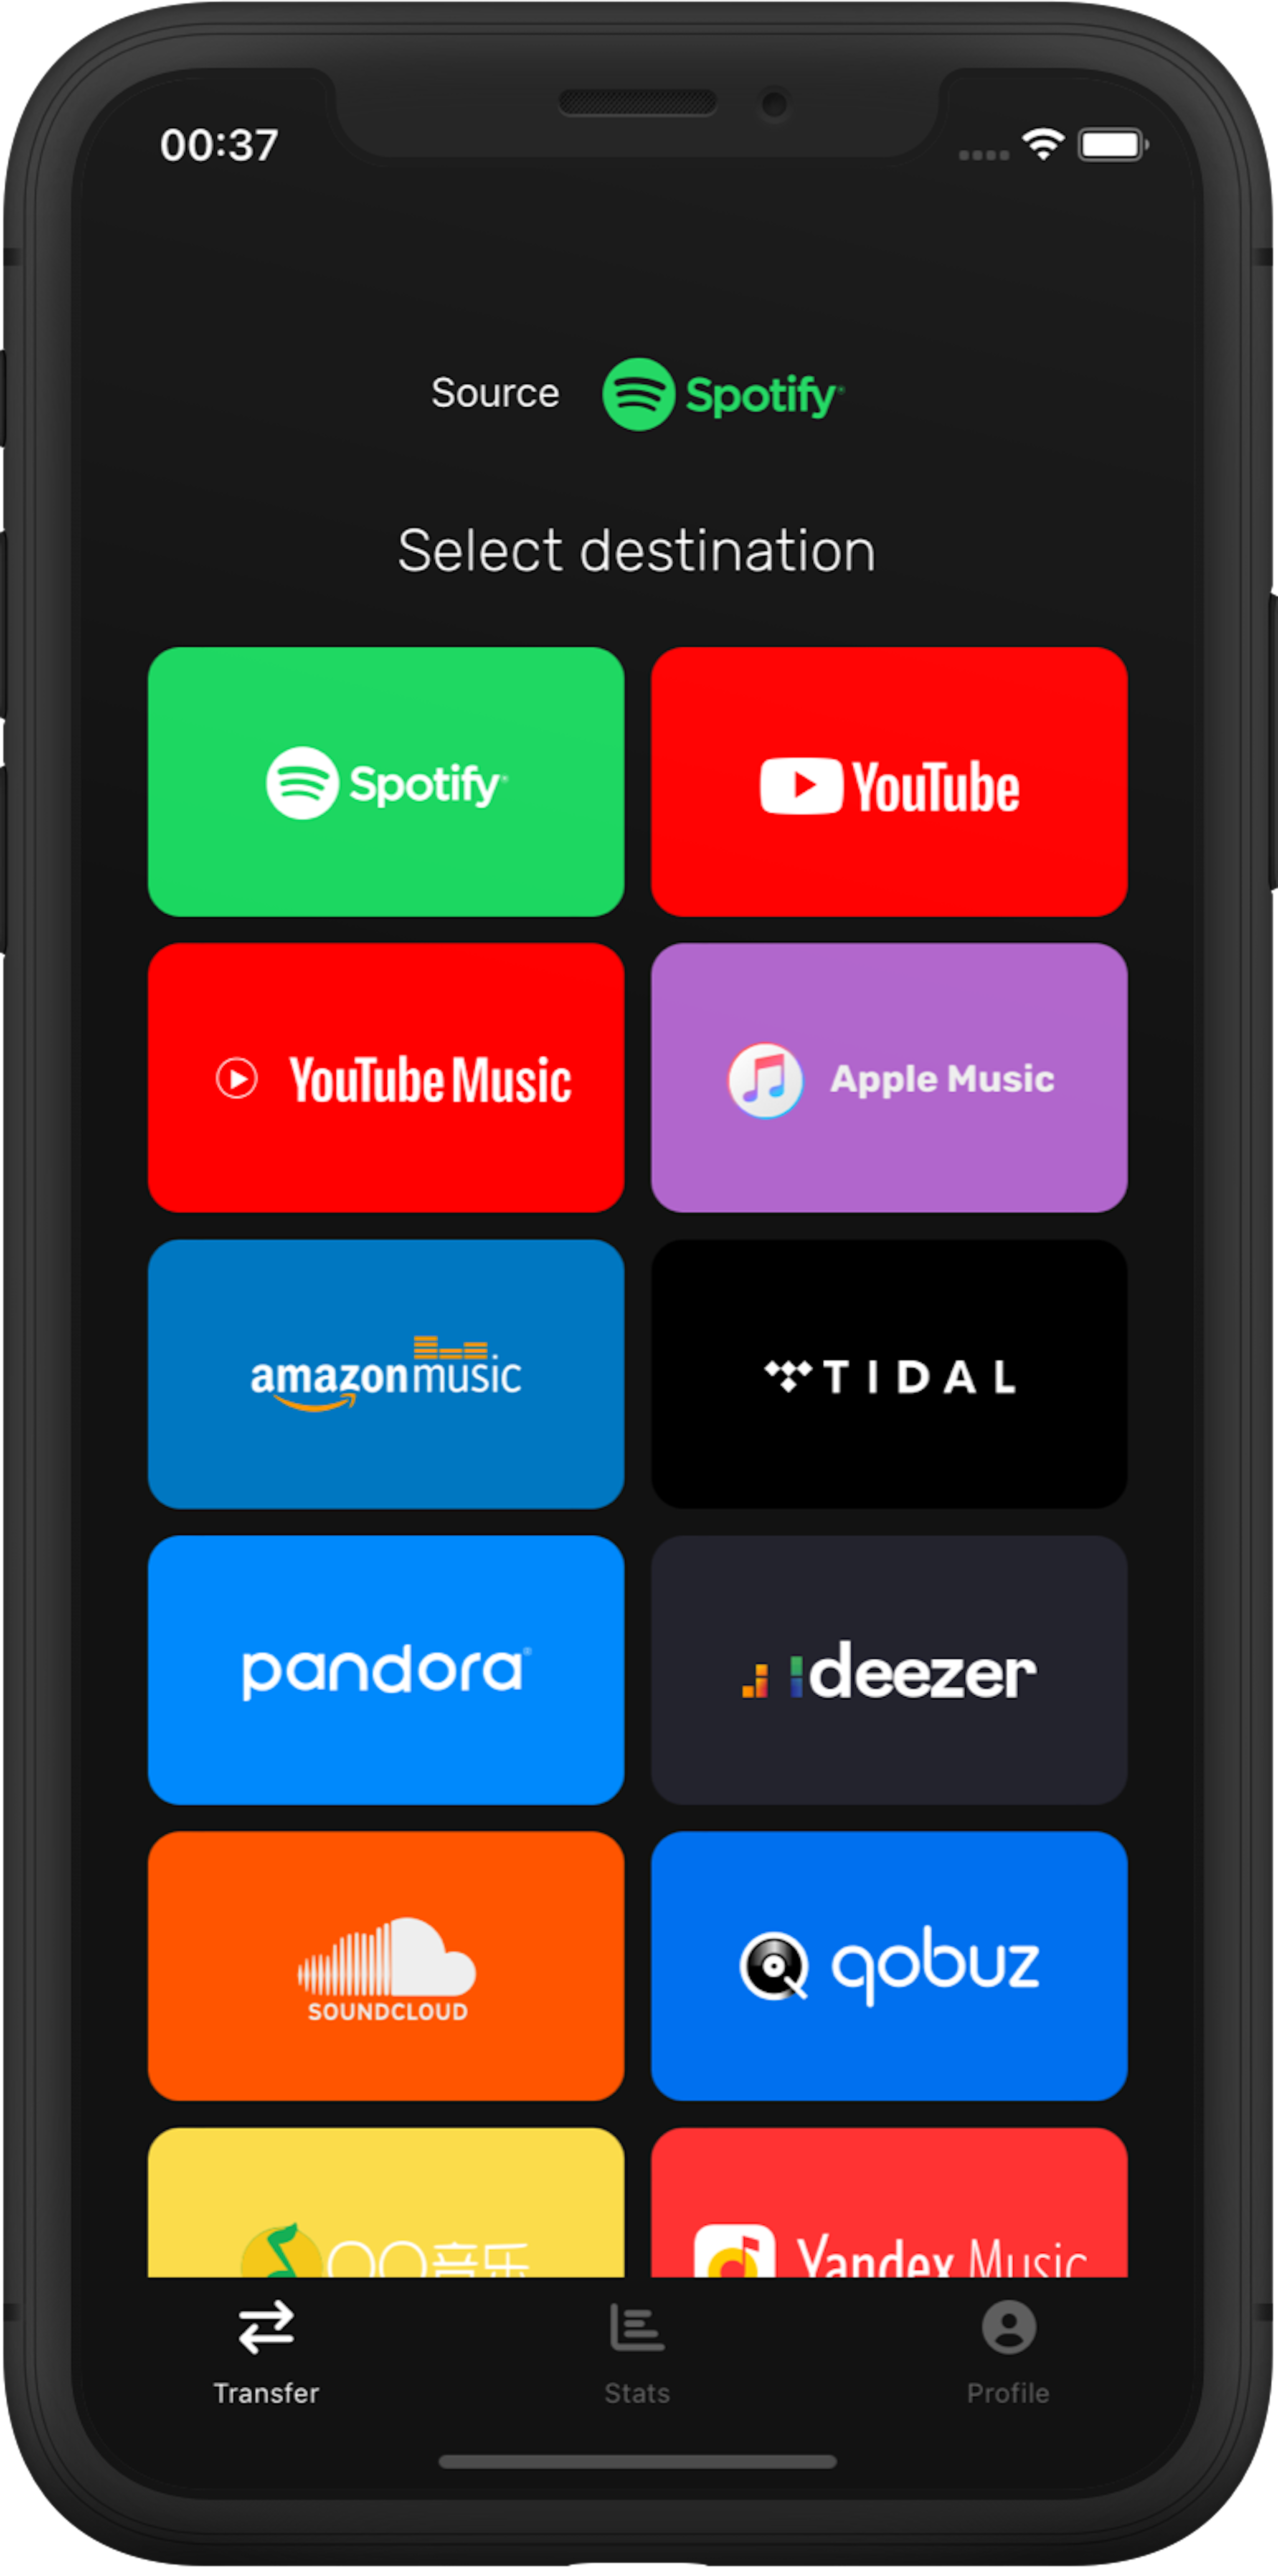 Step 2: Select Pandora as a destination music platform